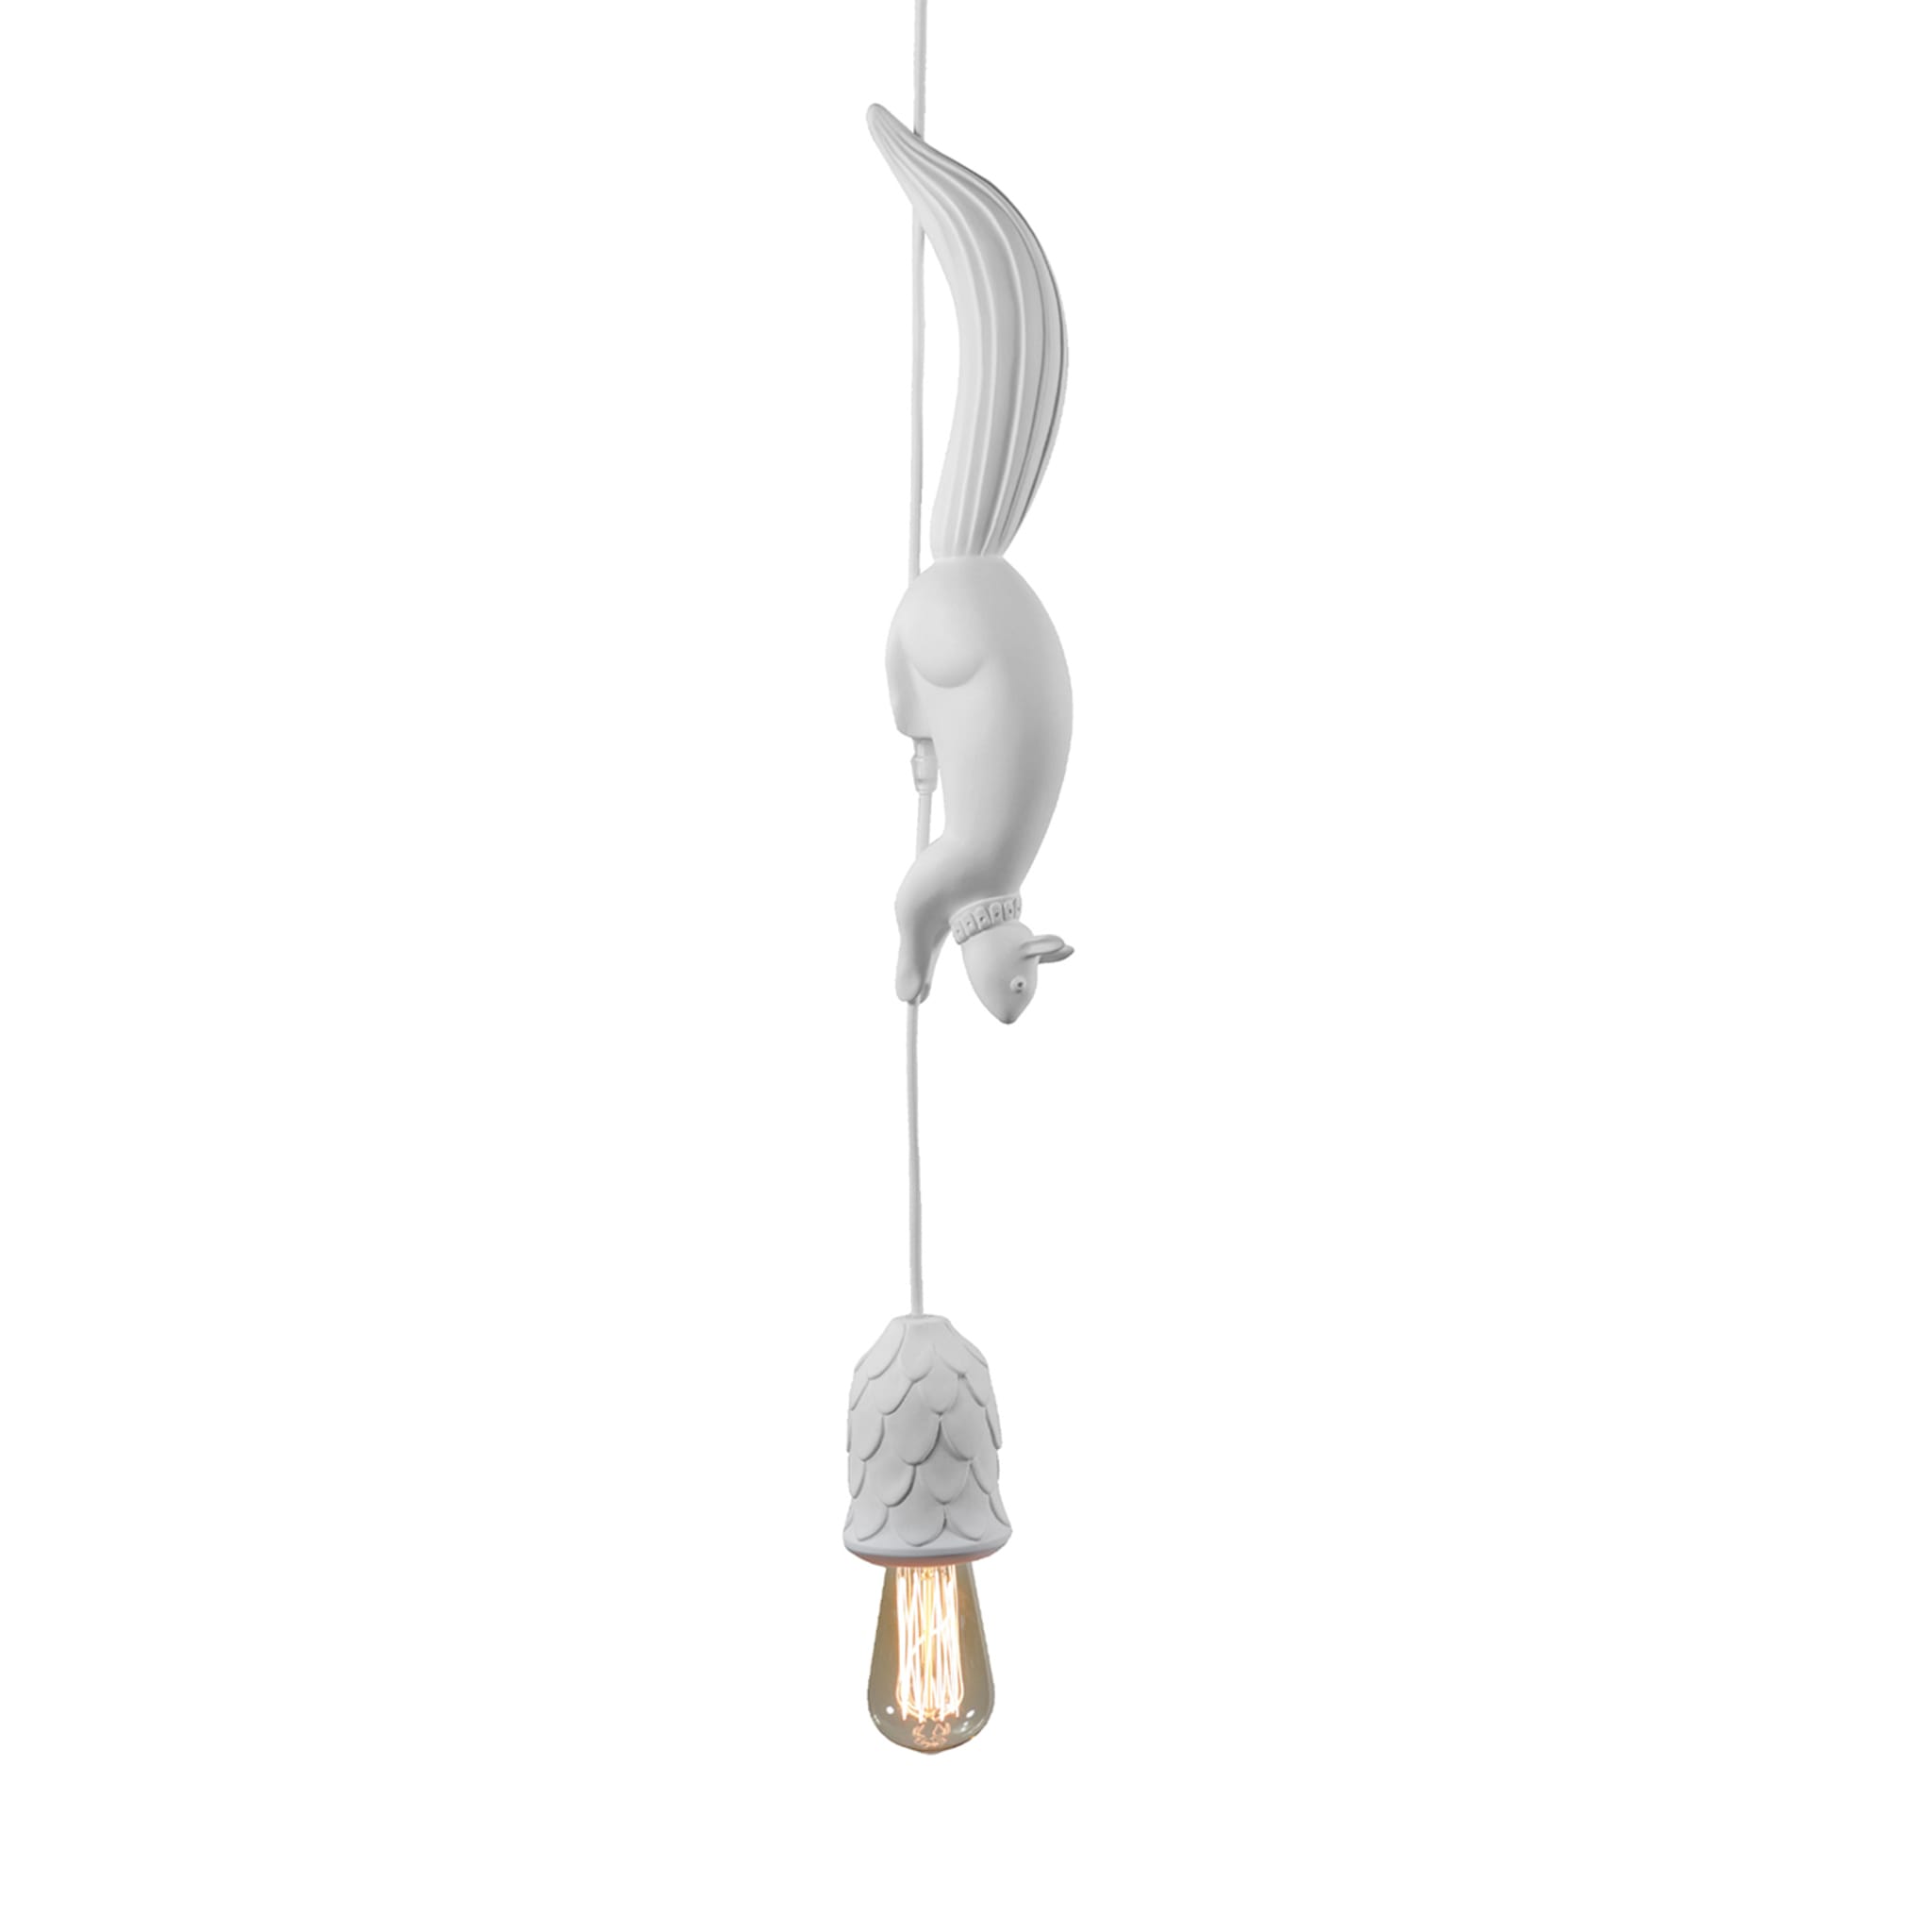 Sherwood & Robin Pendant Lamp by Matteo Ugolini - Main view